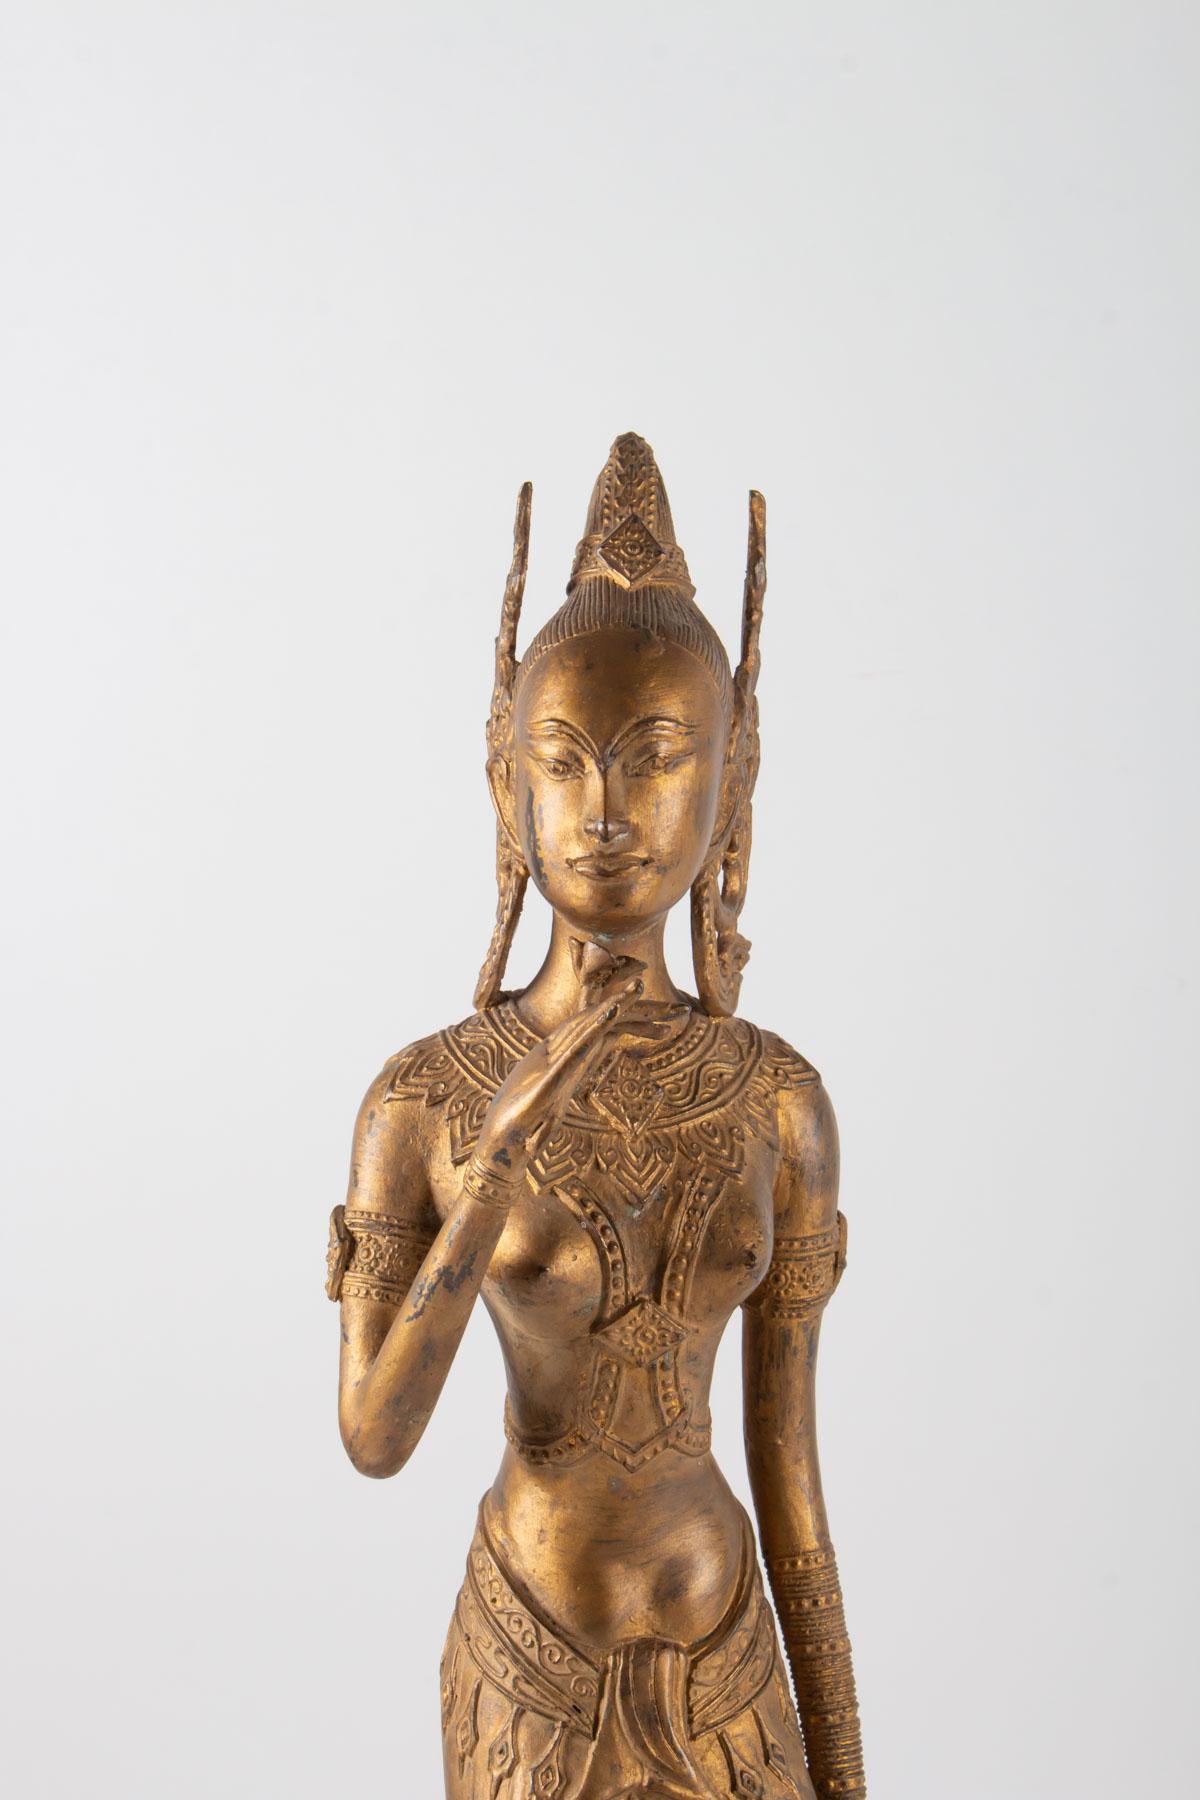 Indonesische Göttin aus vergoldetem Metall, die eine Lotusblume hält, 1920-1940.
Maße: H 61cm, B 15cm, B 15cm.